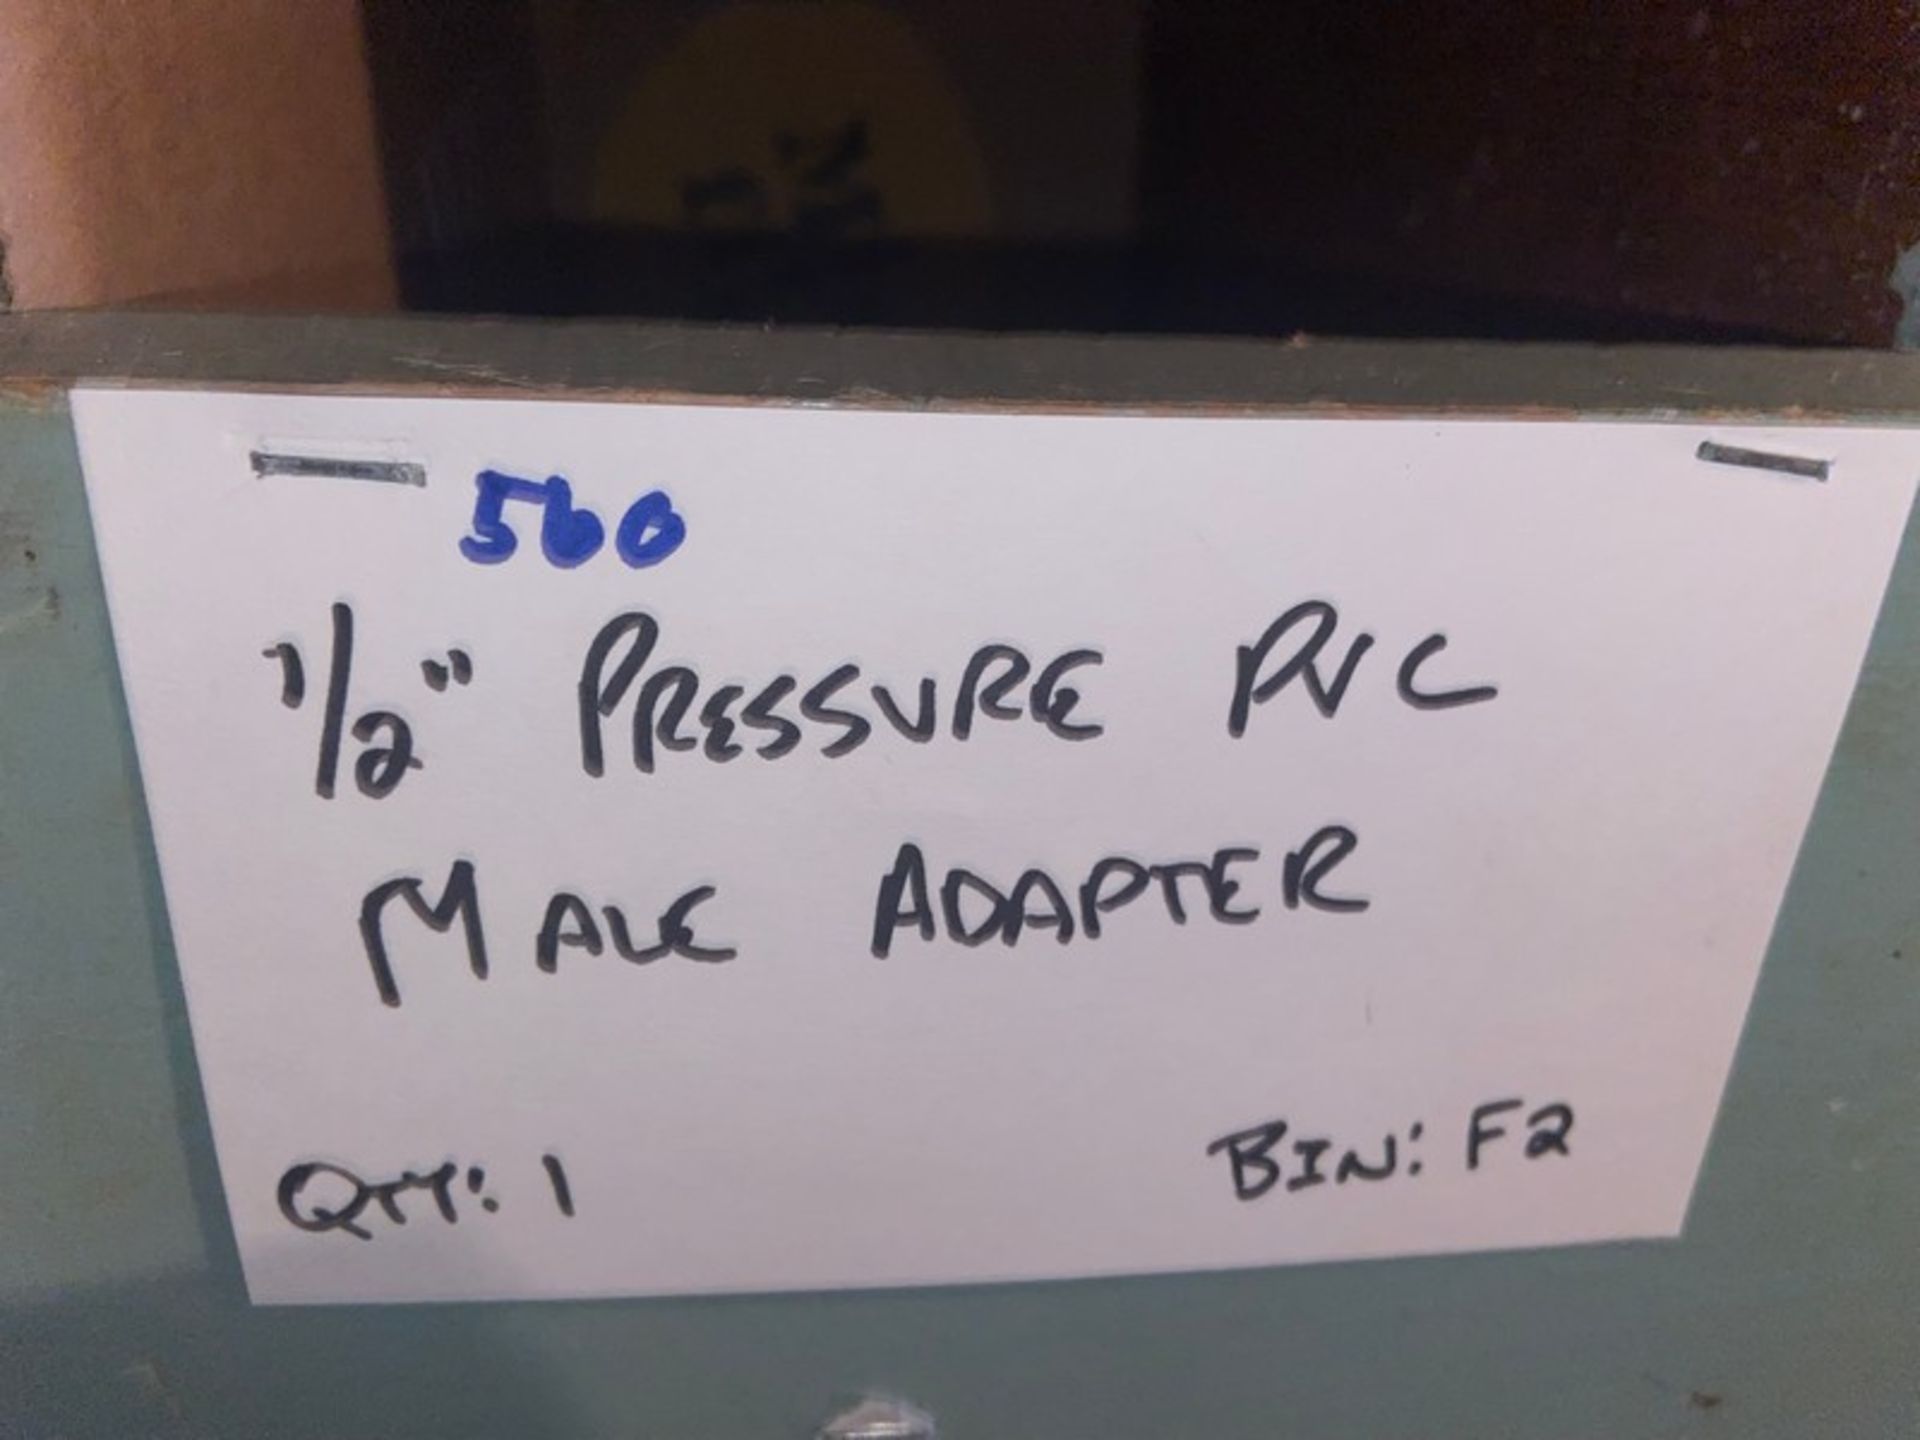 (1) 1/2" Pressure PVC Male Adapter (Bin: F2); (6) 1/2" Pressure PVC Female Adapter (LOCATED IN - Image 3 of 11